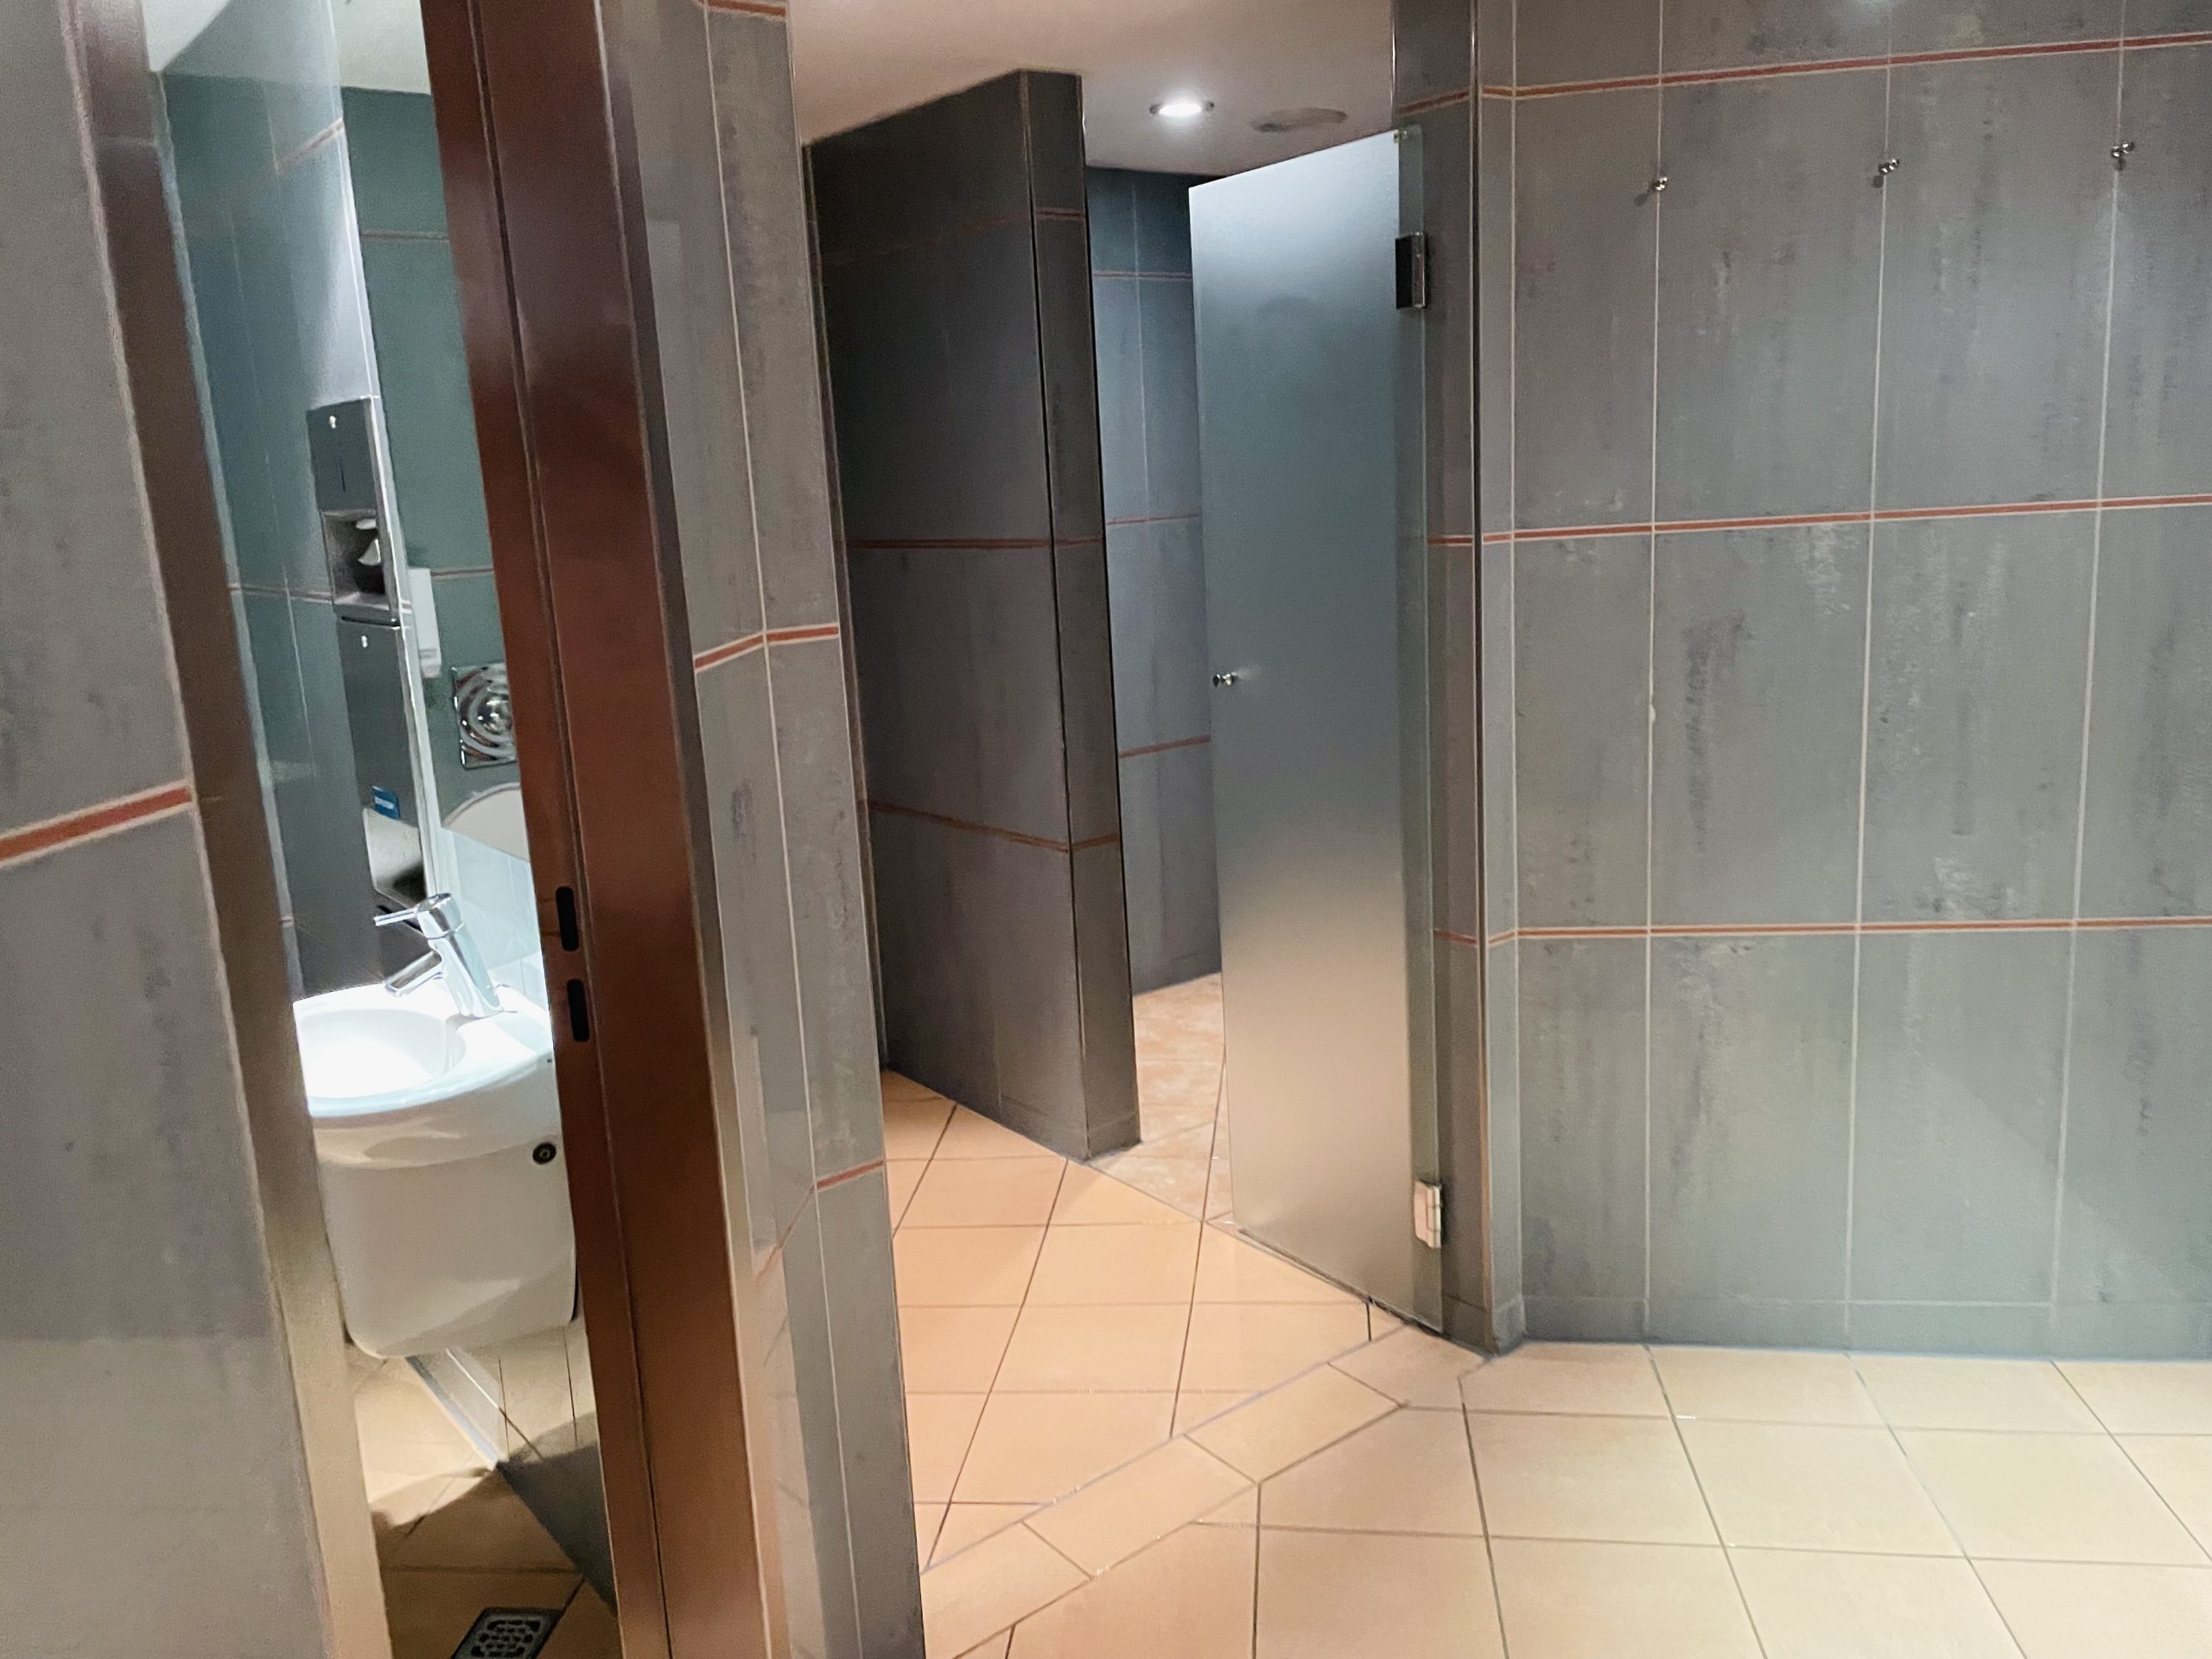 Dusche und WC im Wellness-Bereich des Elysee Grand Hotels